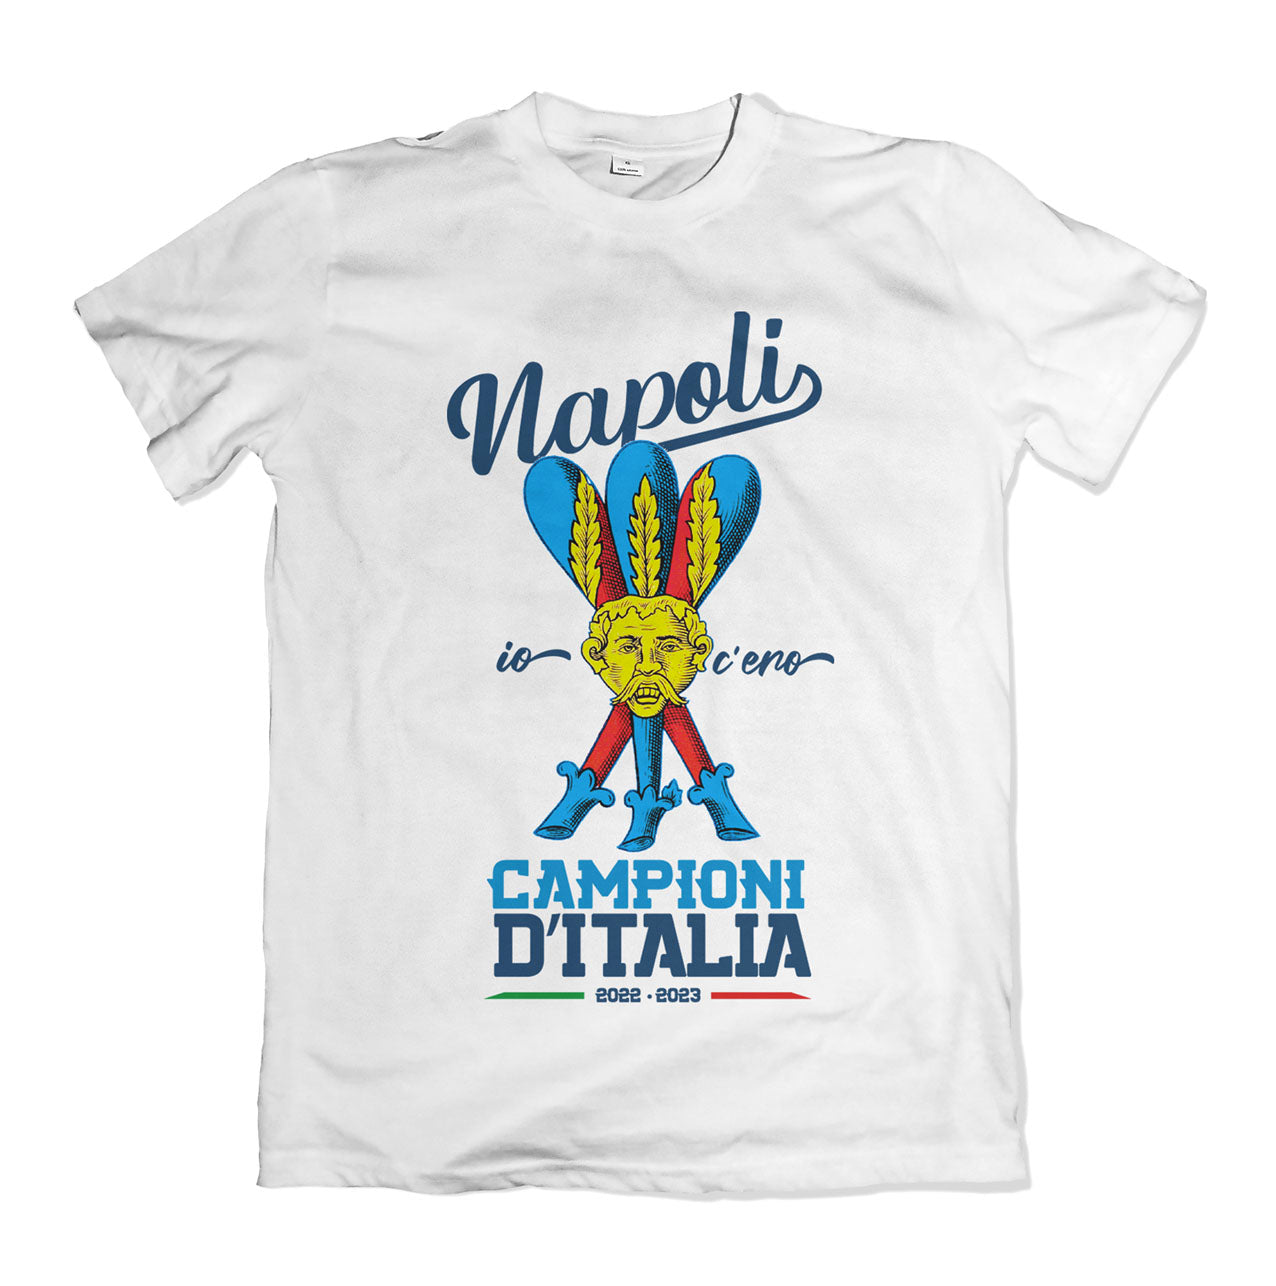 Napoli Champion t-shirt - Scudetto 2023